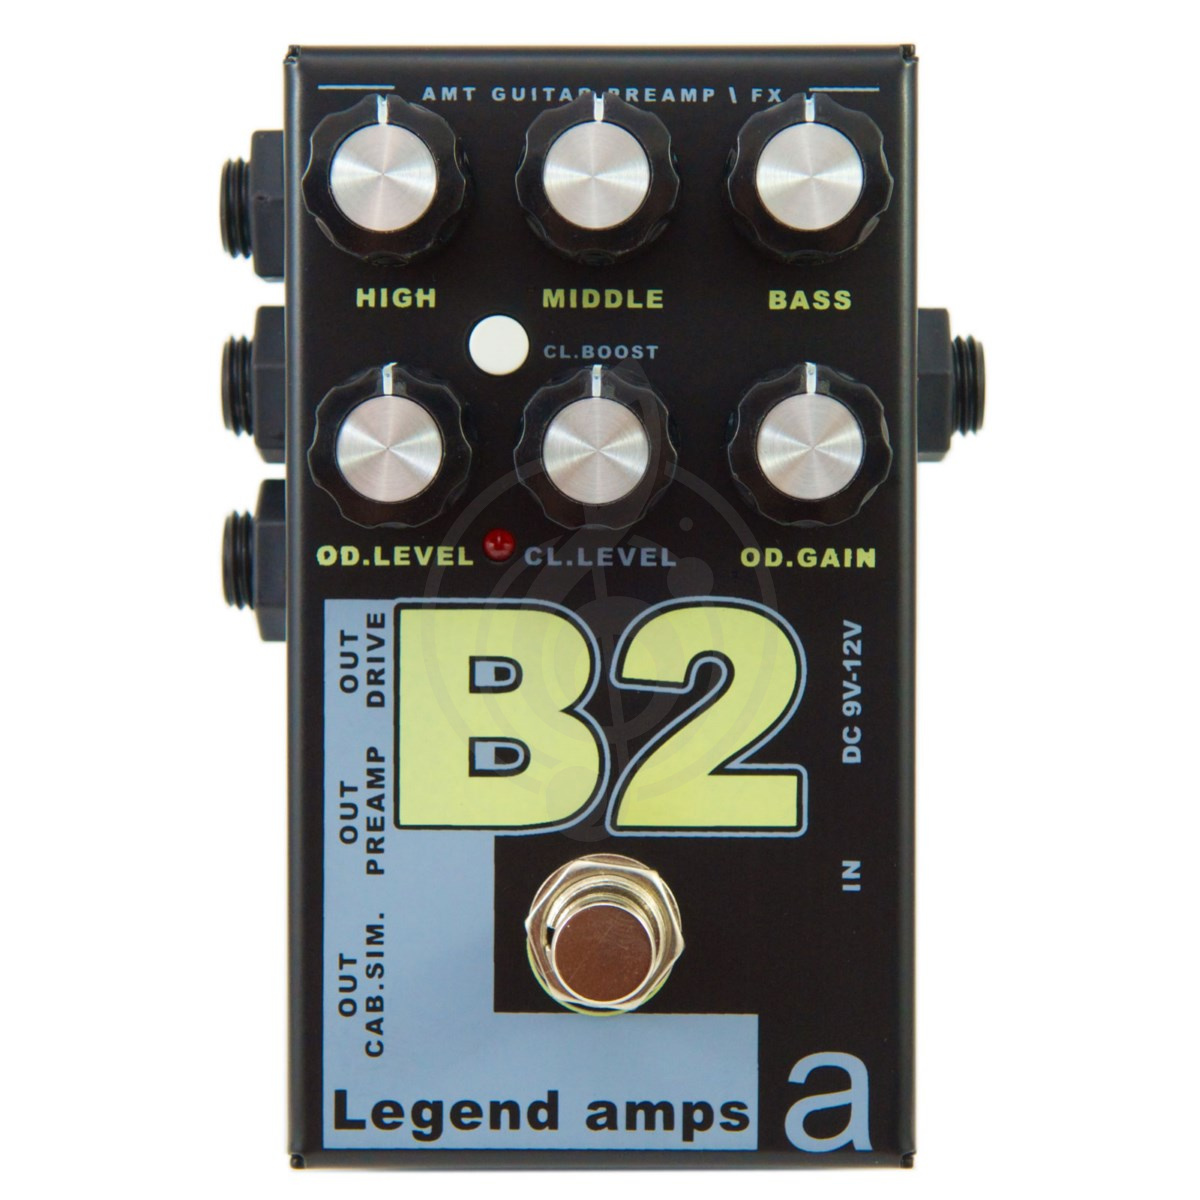 Гитарный предусилитель (преамп) Гитарные предусилители (преампы) AMT electronics AMT Electronics B2 Legend Amps 2 – двухканальный гитарный предусилитель B2 - фото 1